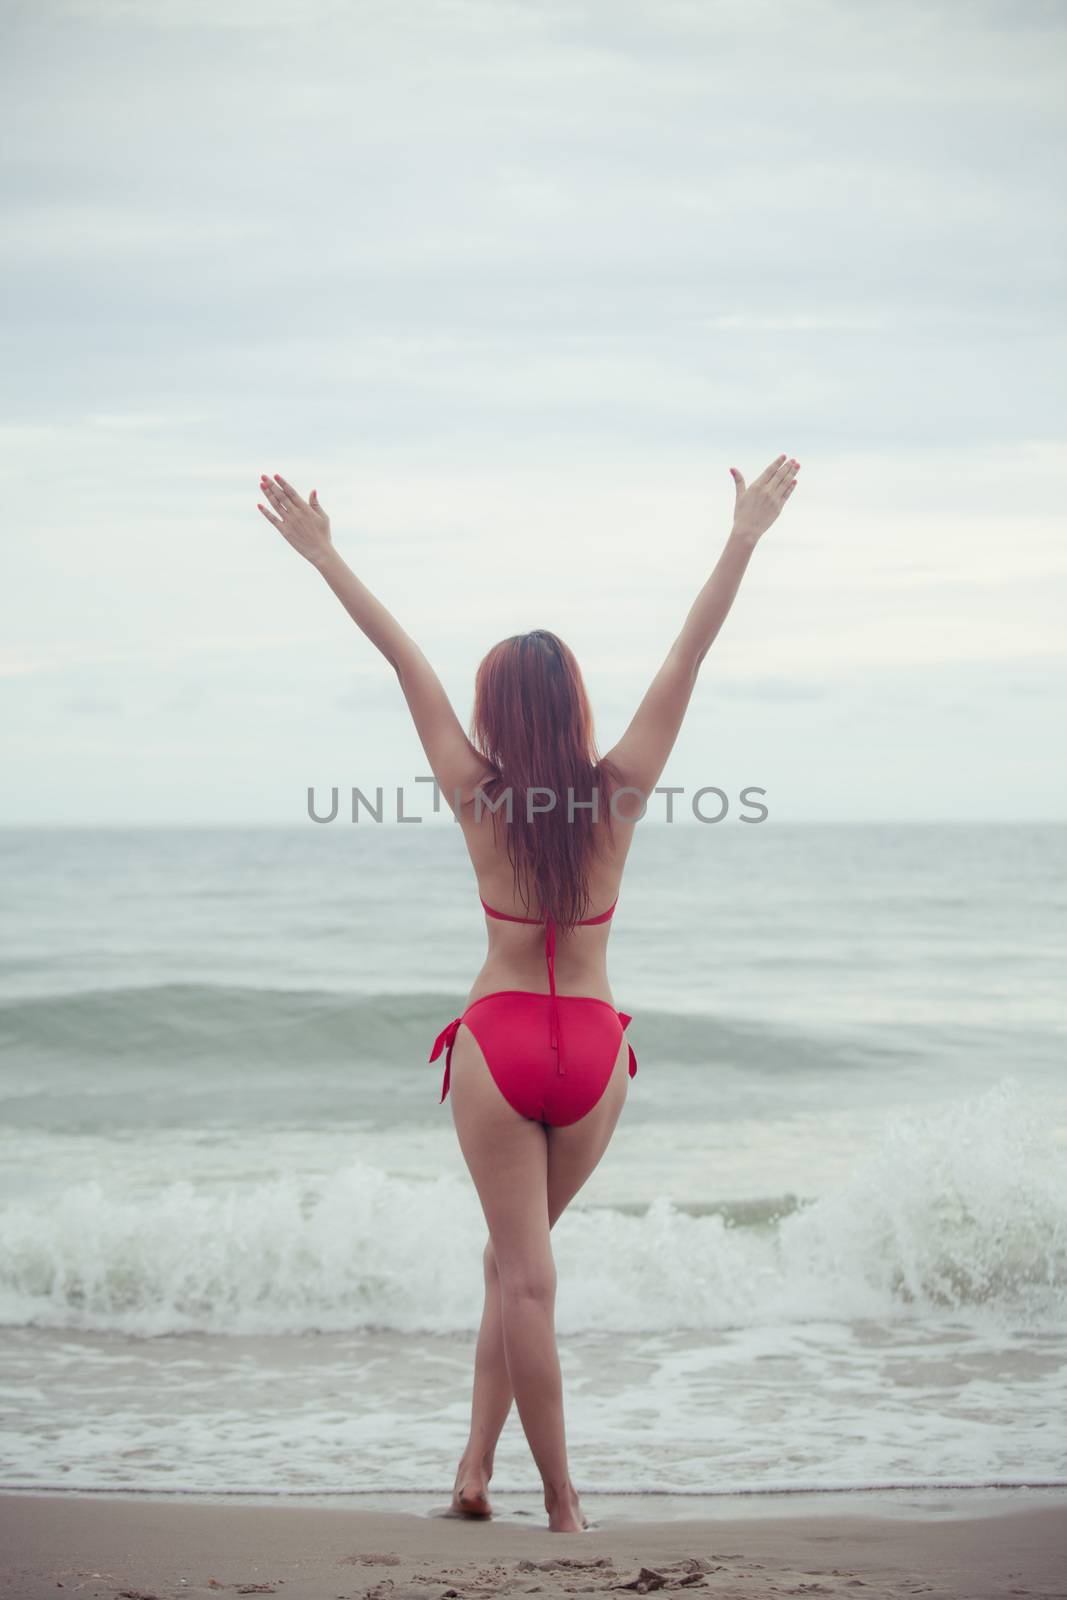 Sexy back of a beautiful asian woman in red bikini on sea background